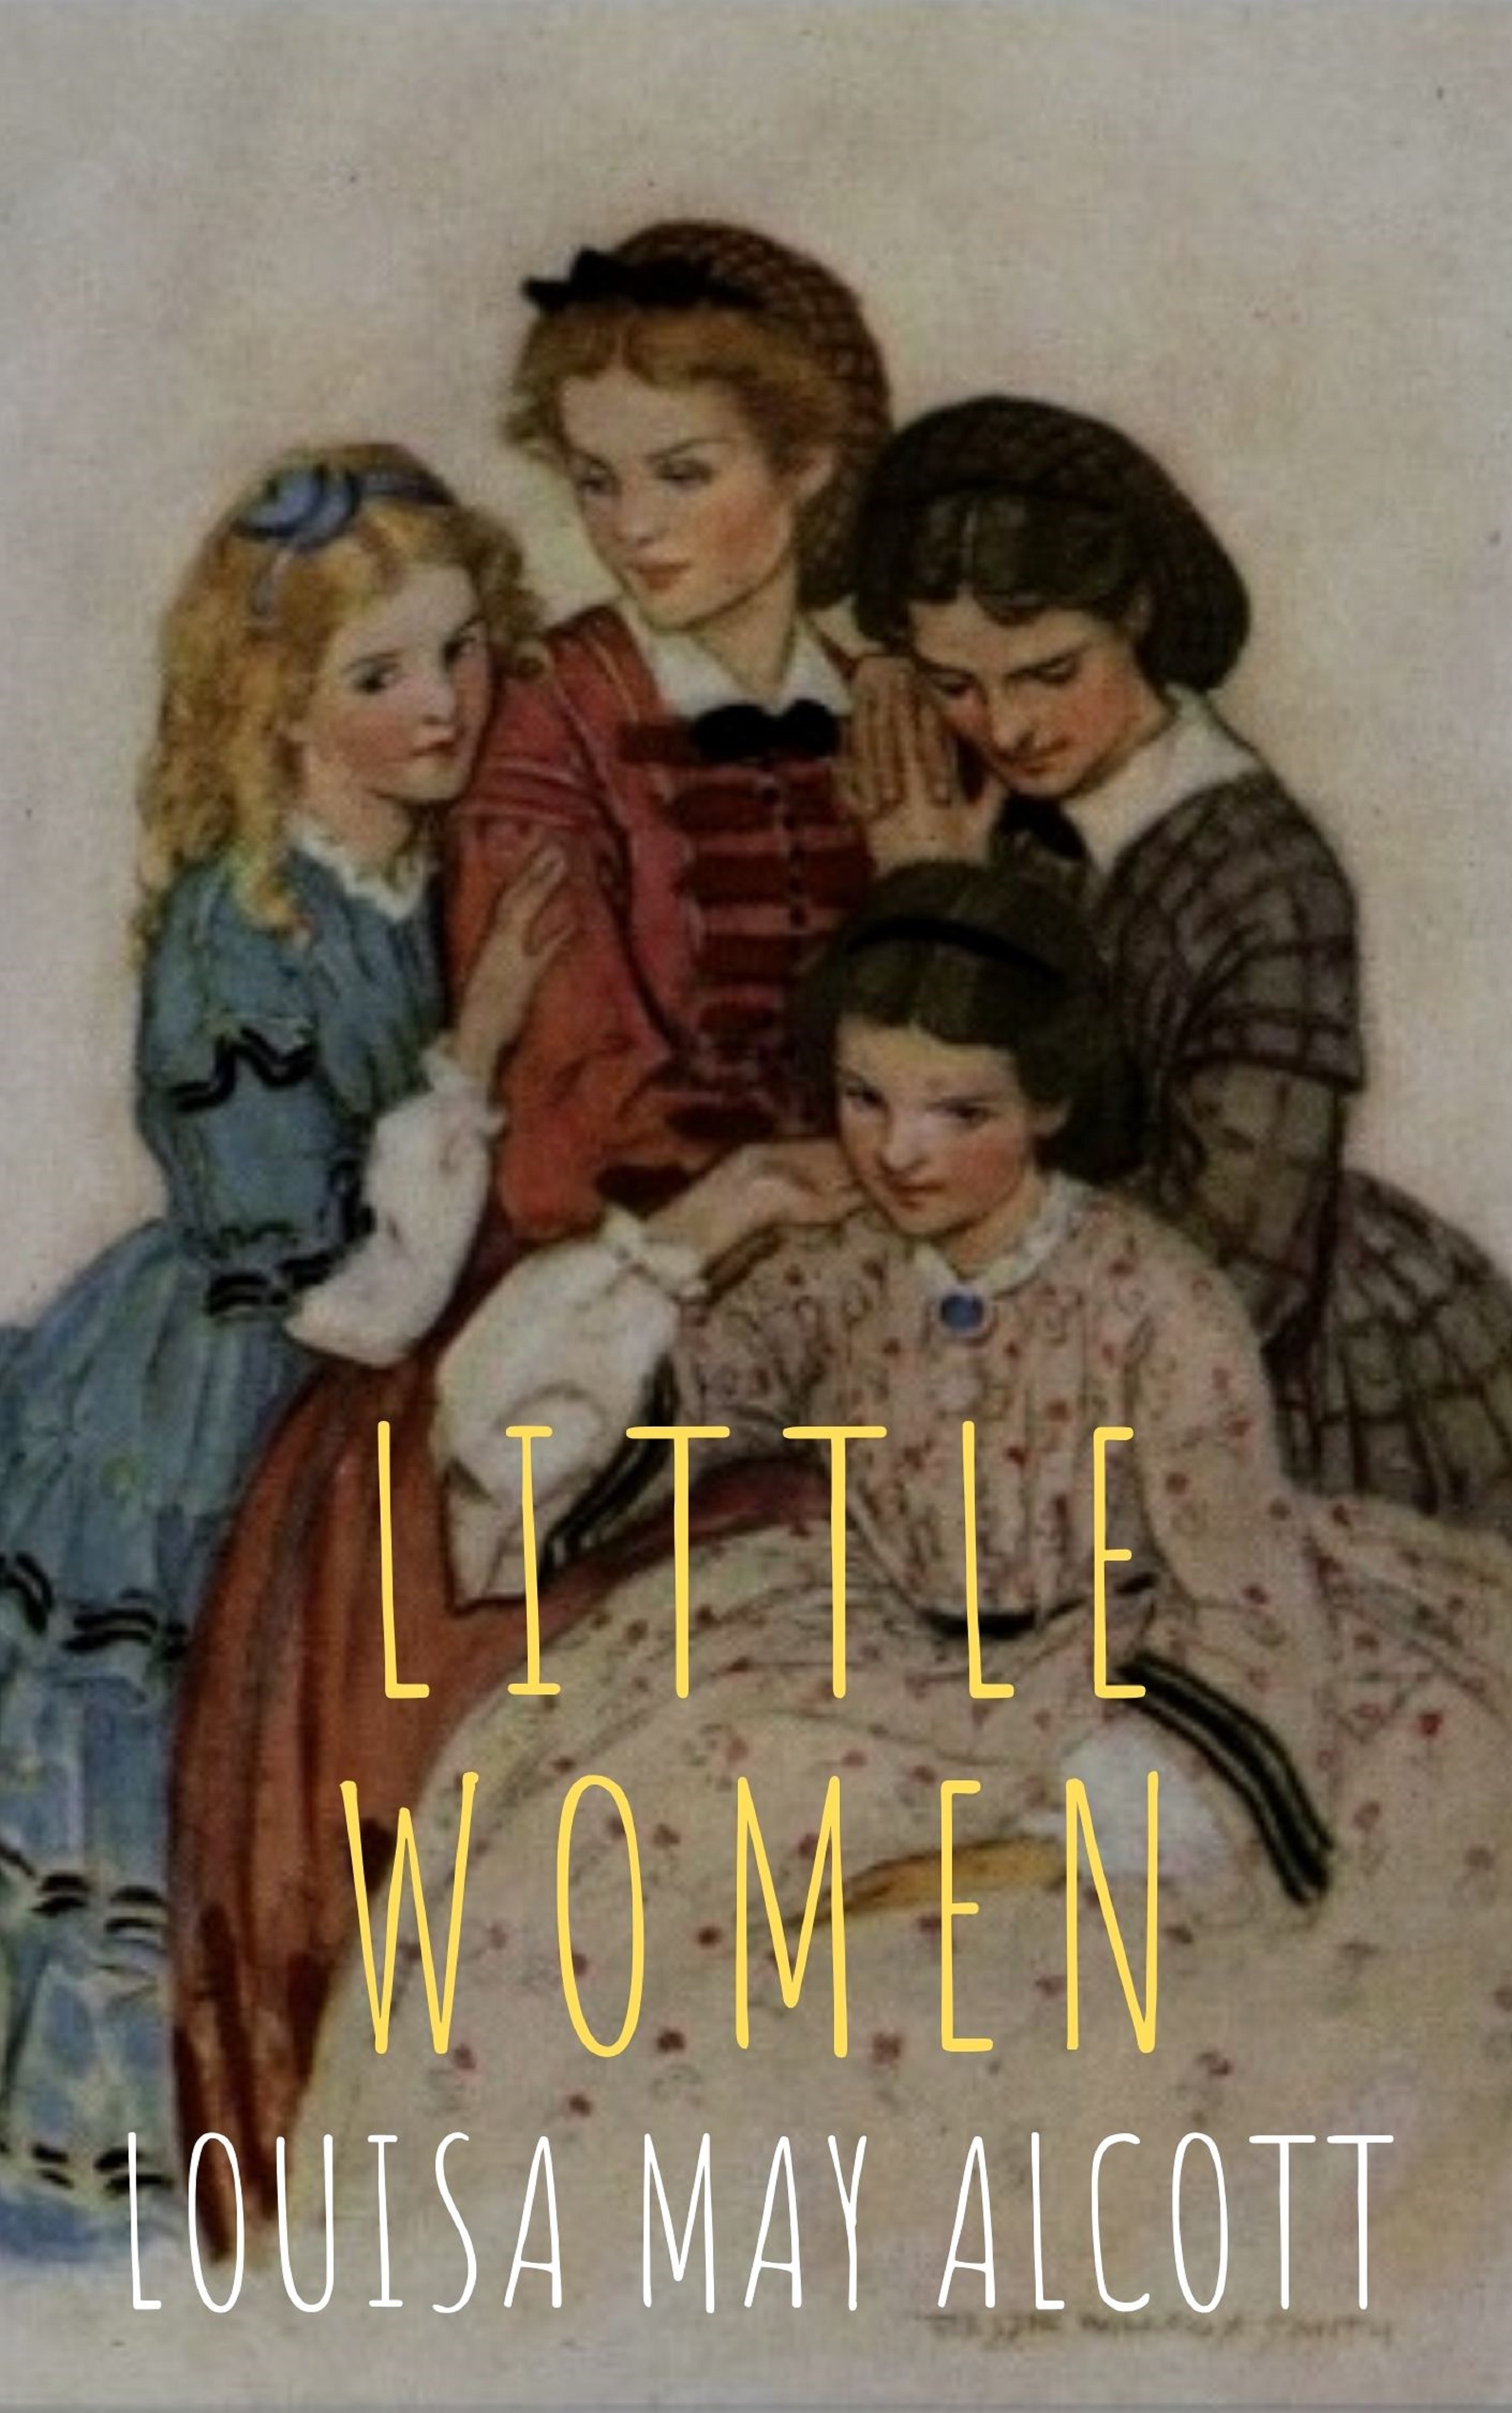 Little women in english. Олкотт л.м. "little women". Маленькие женщины книга. Маленькие женщины иллюстрации.